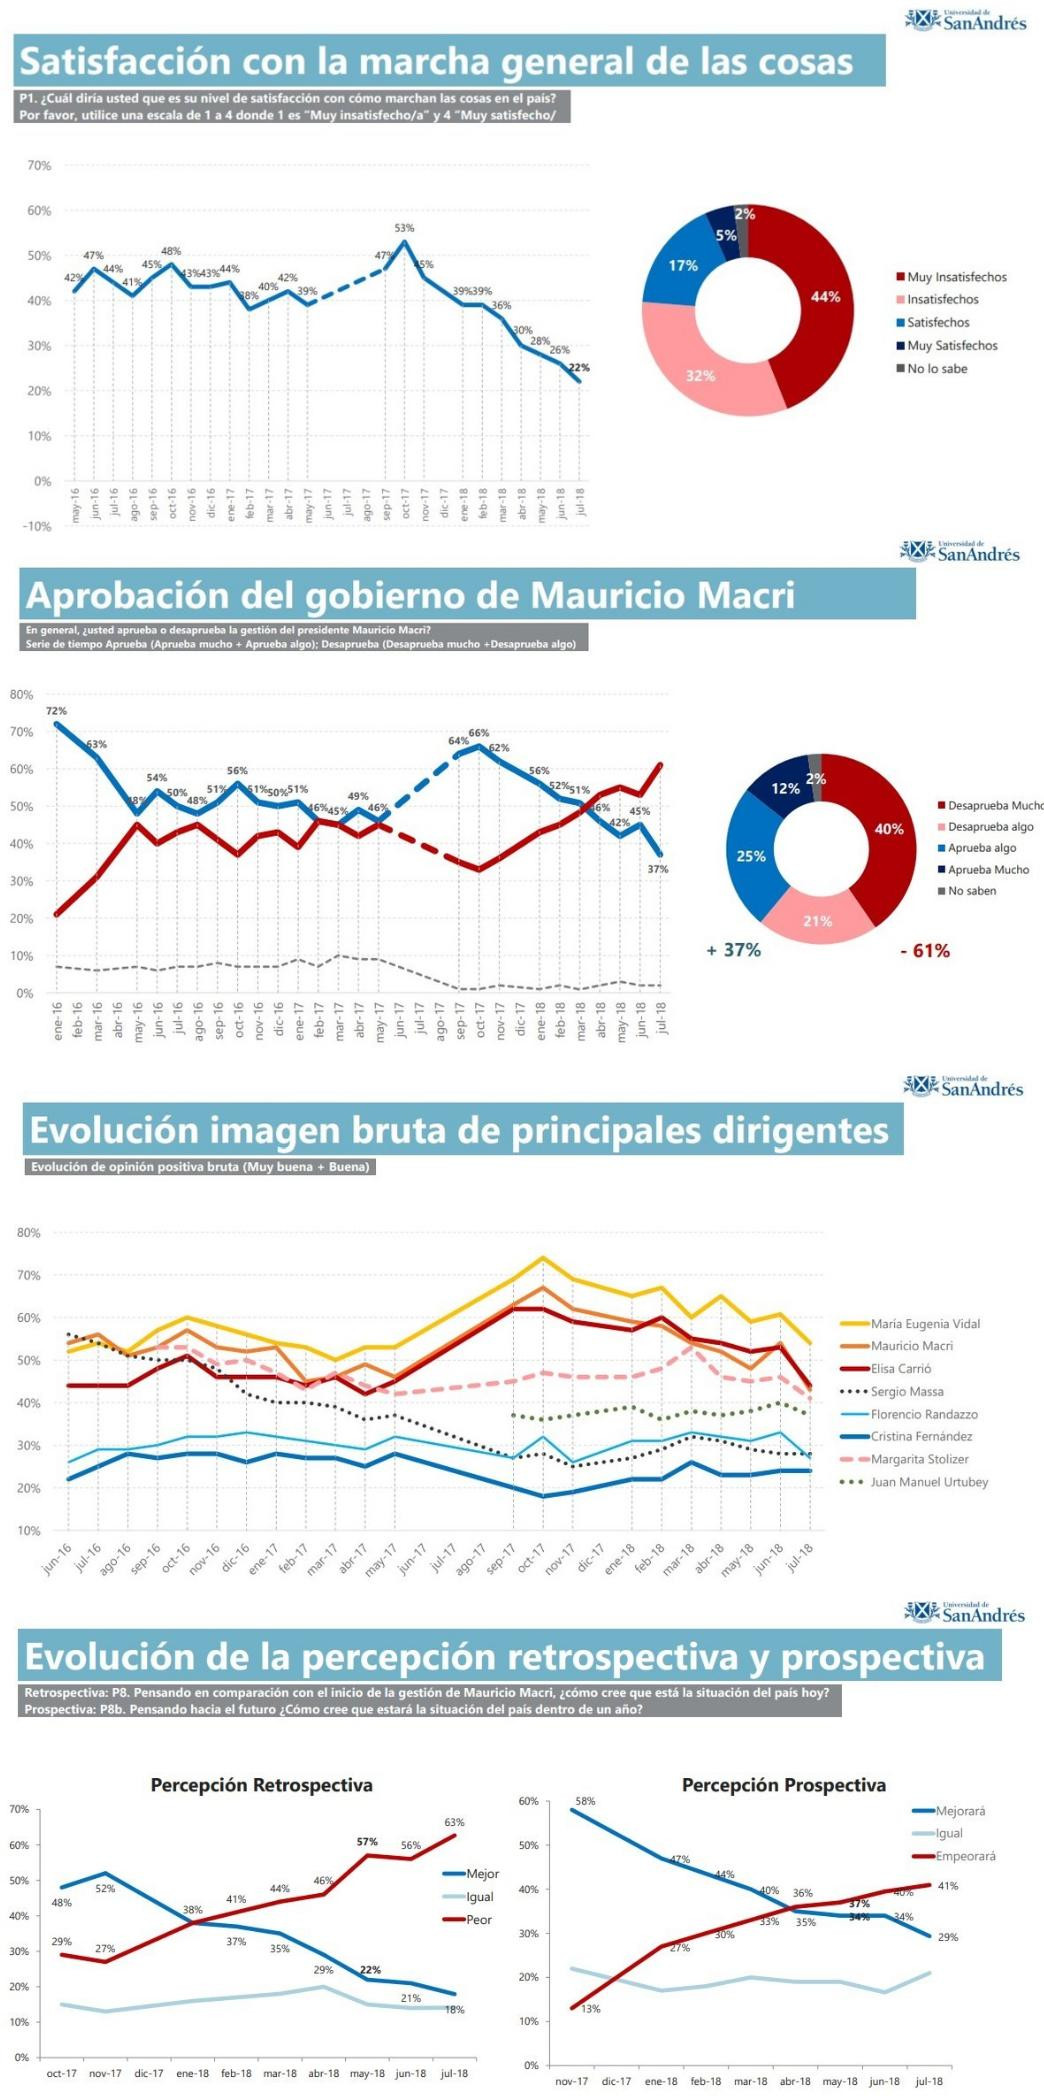 Imagen de Macri - Encuesta